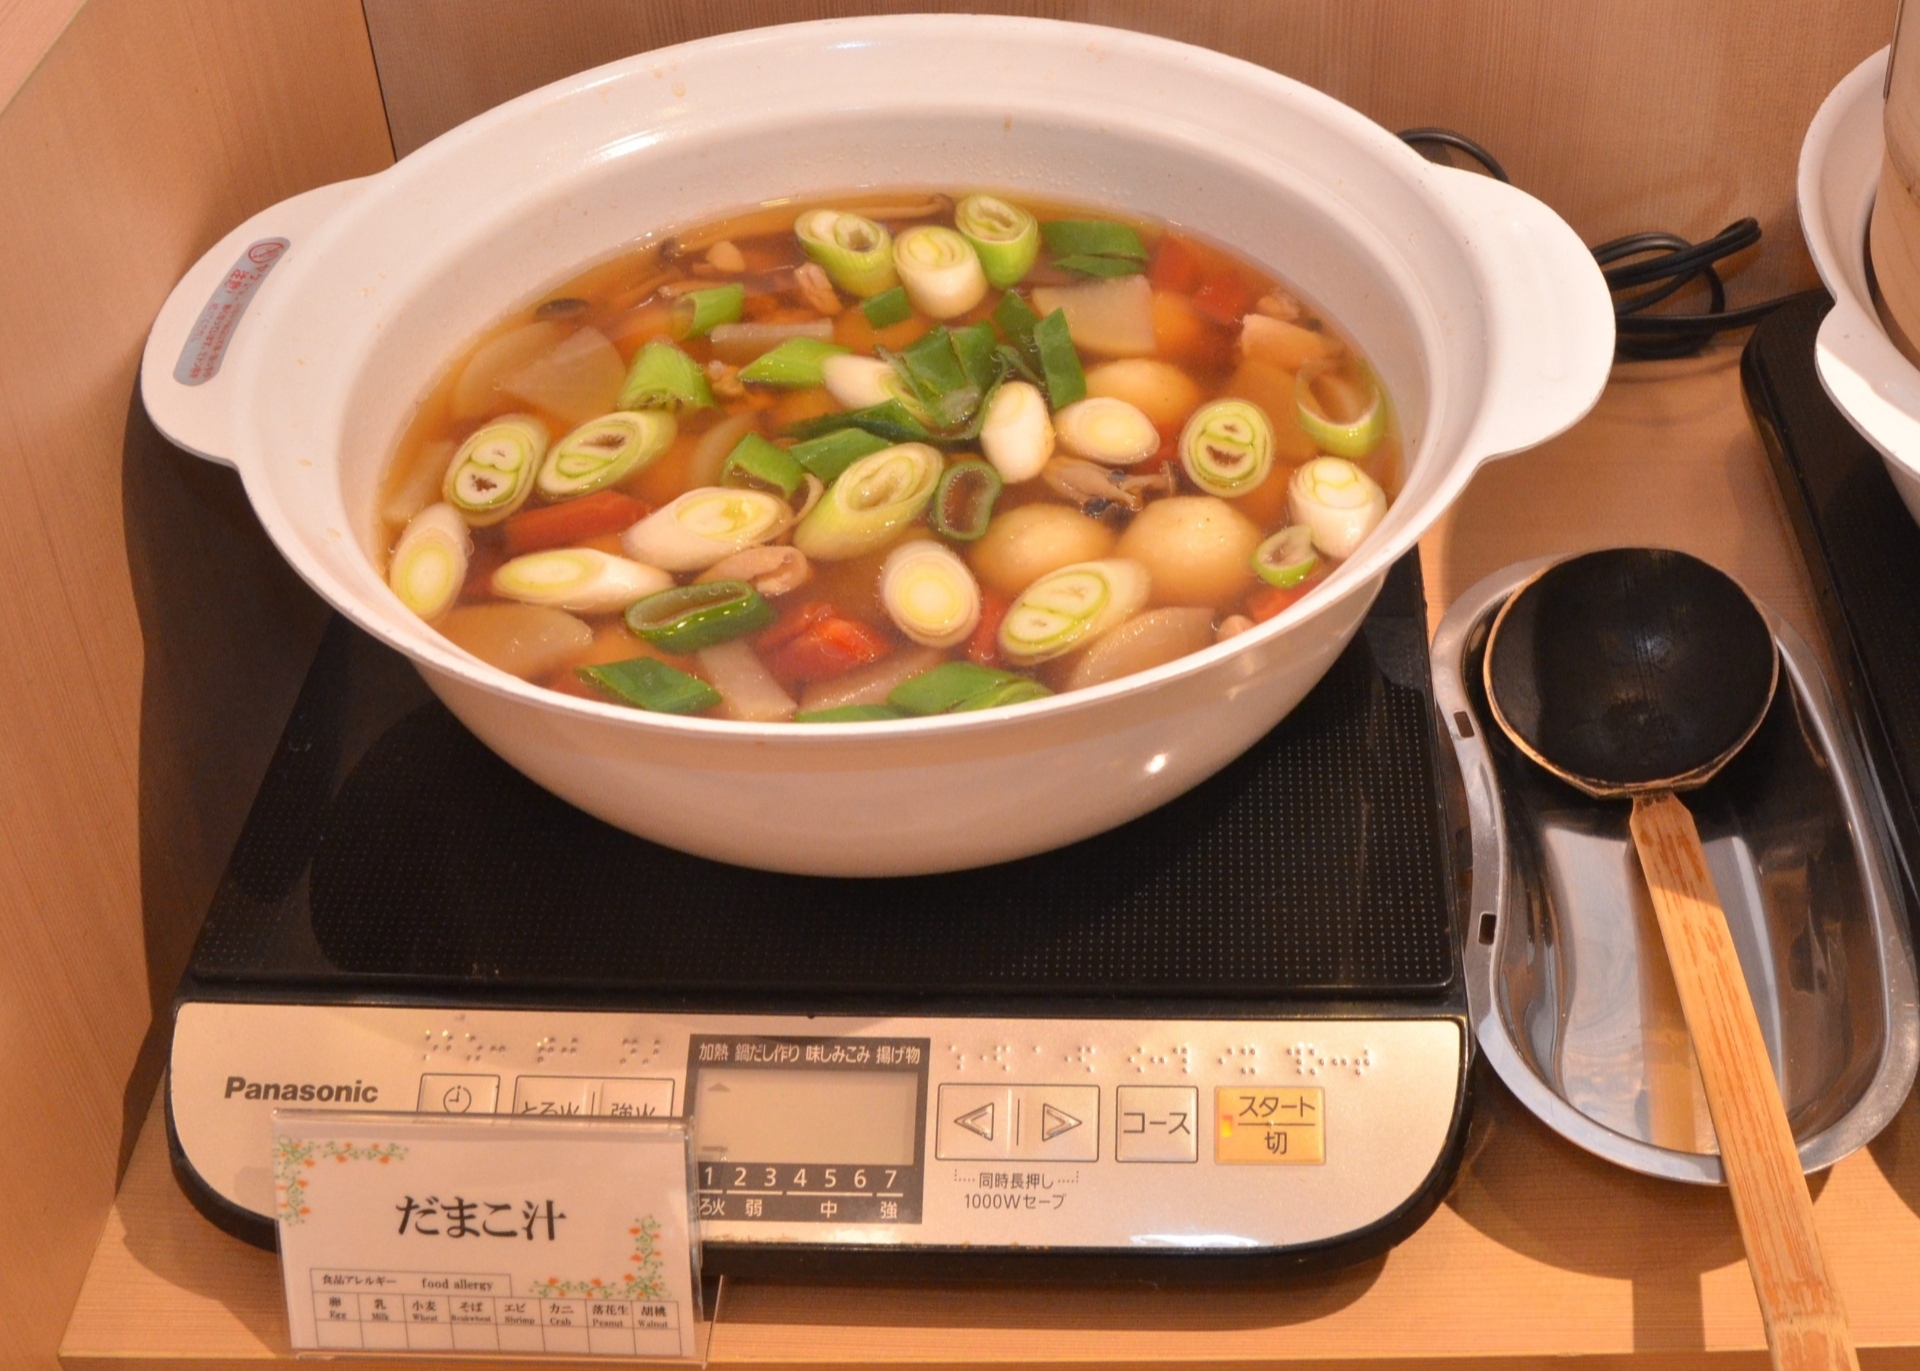 【だまこ汁】<br>秋田の家庭で造られる郷土料理の「だまこ汁」。<br>お米を炊いた後にすりつぶし団子状にした物を、鶏ガラベースのスープに醤油で煮込んでいます。